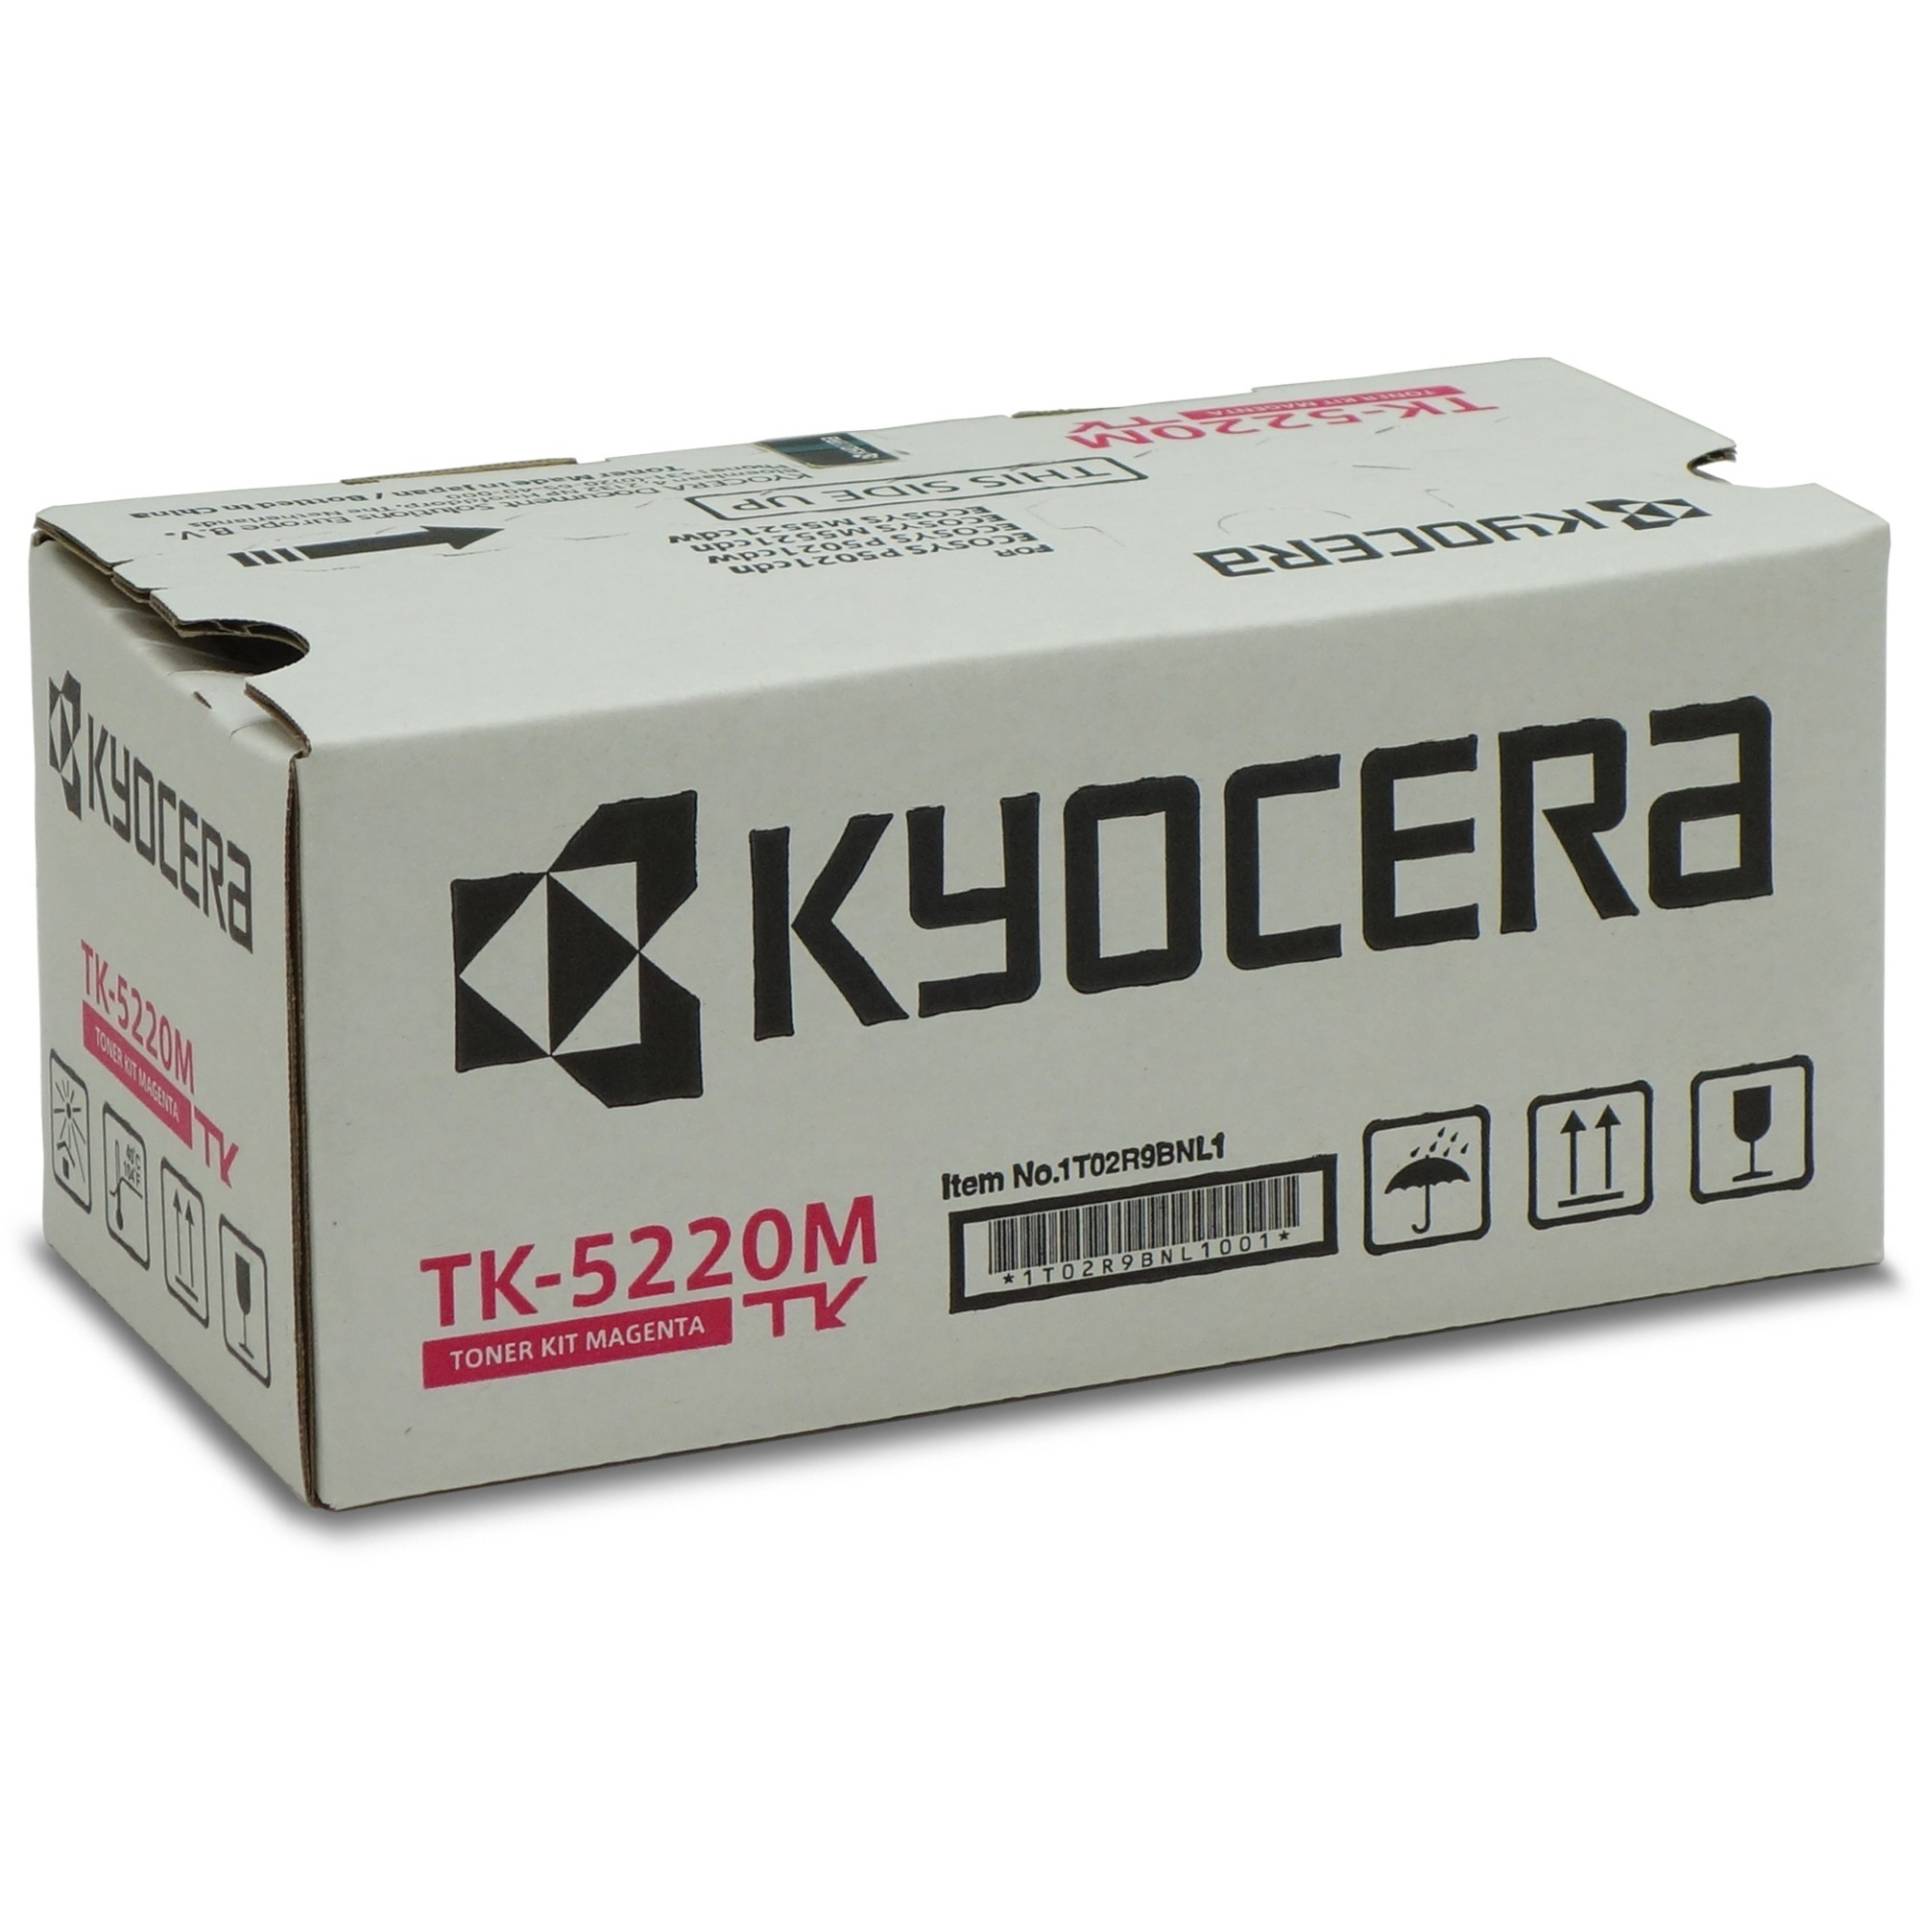 Toner magenta TK-5220M von Kyocera